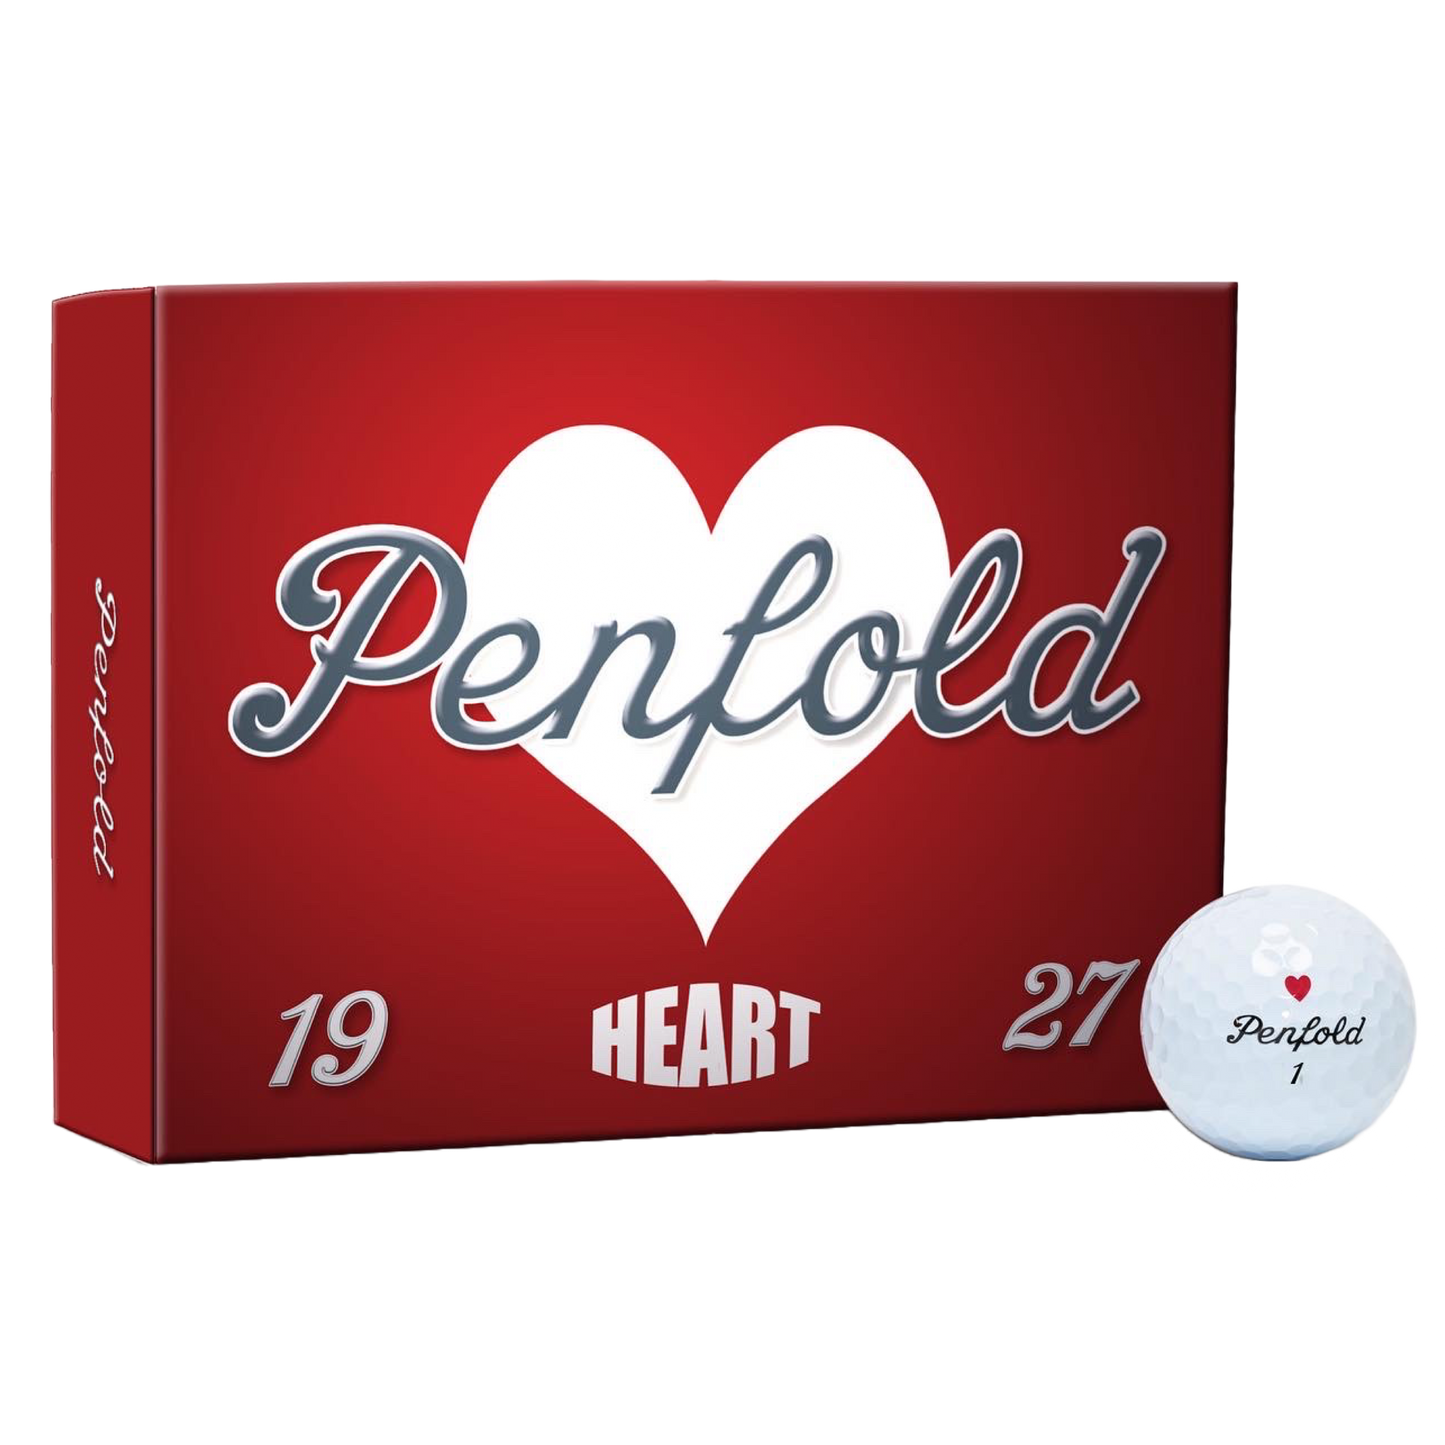 Penfold Heart